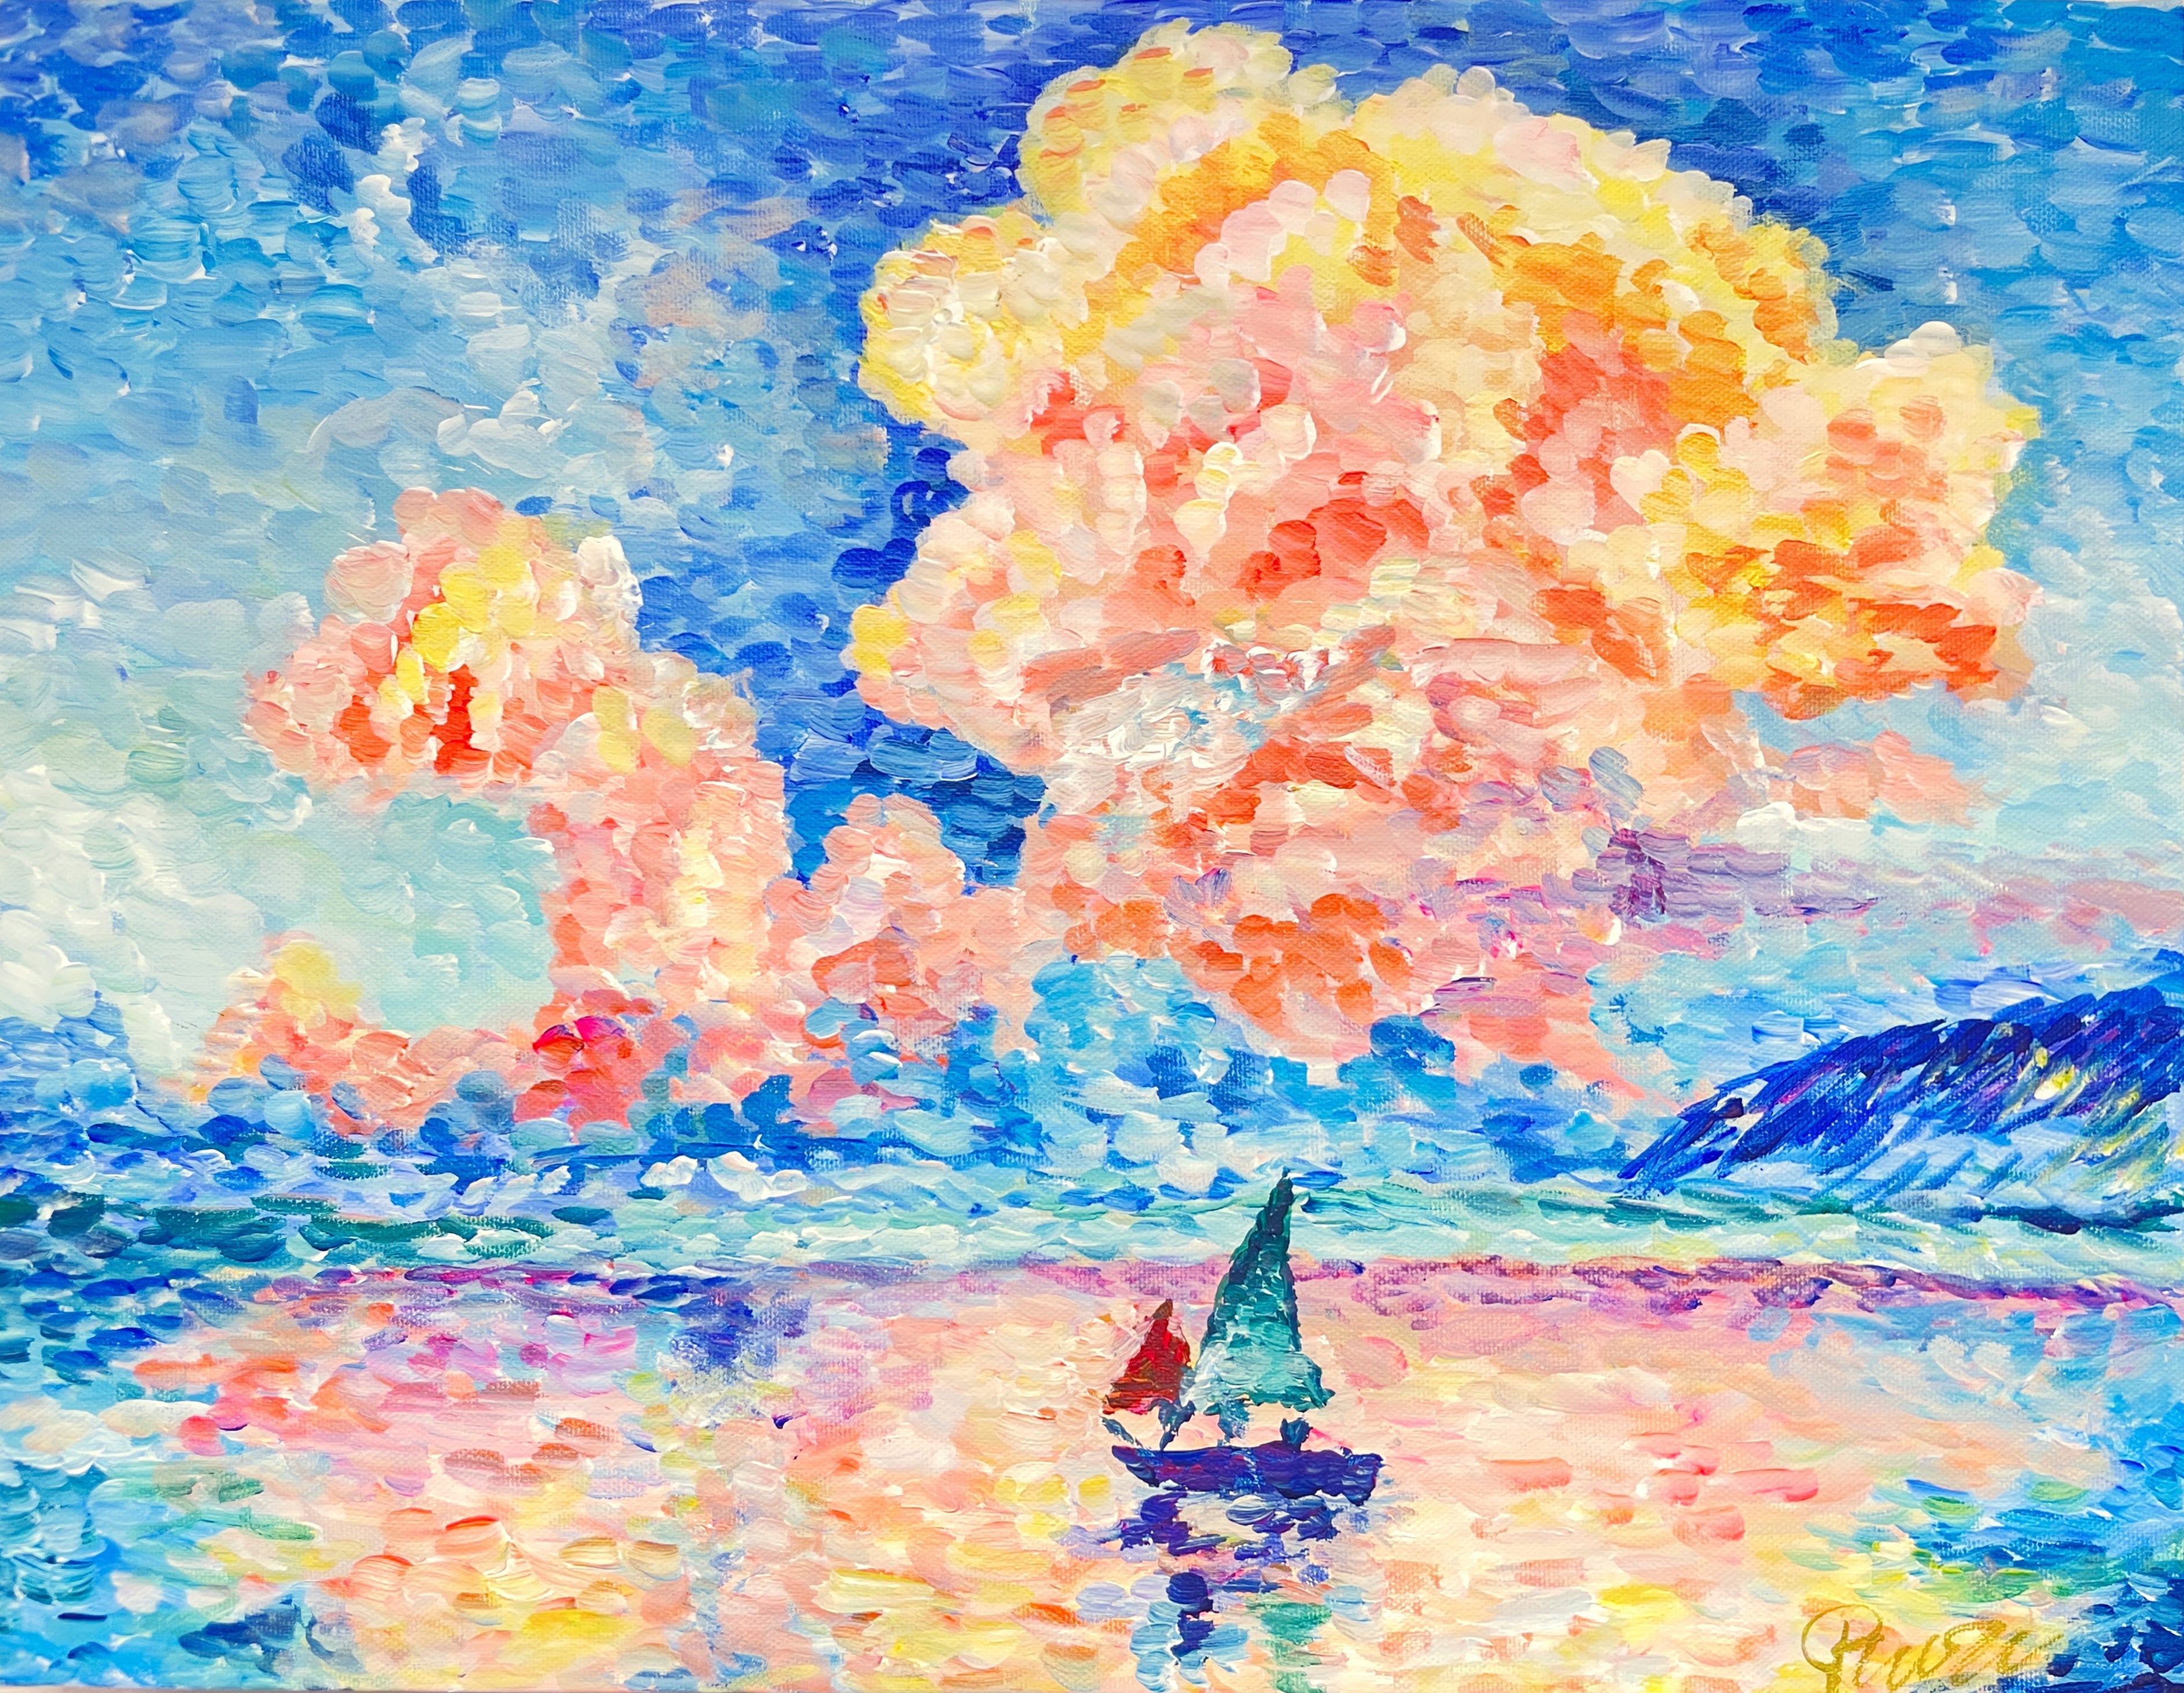 【上野/根津】10月15日(日) 13:00-15:30 | ポール・シニャック | ピンク雲（Antibes, the Pink Cloud by Paul Signac）